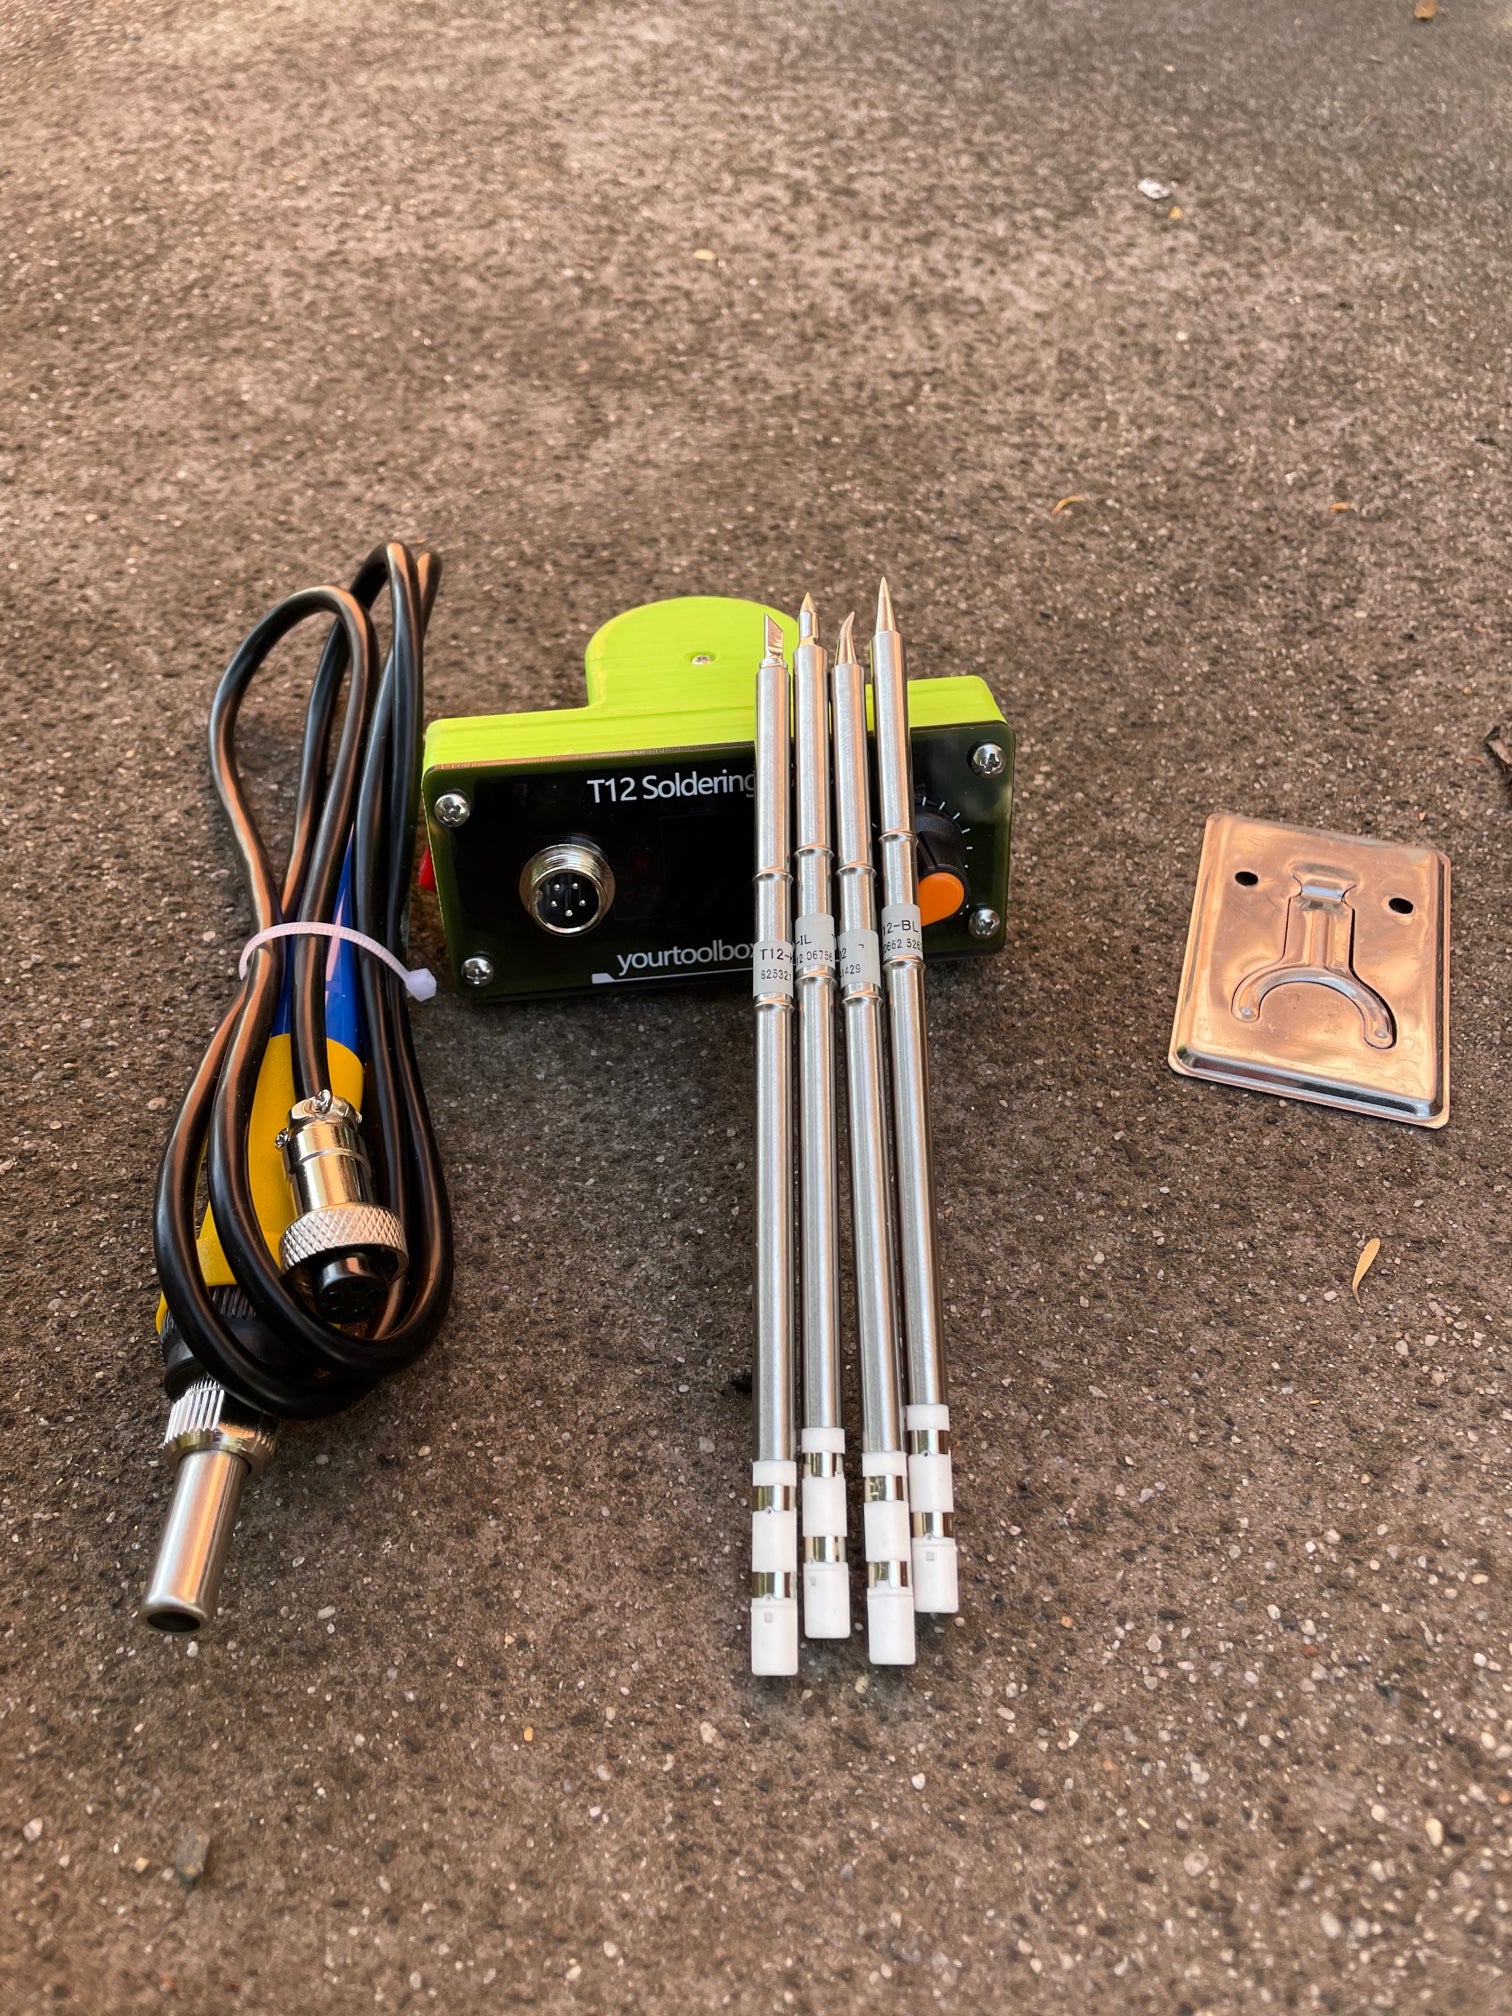 Ryobi 18v custom made smart mini soldering station, T12